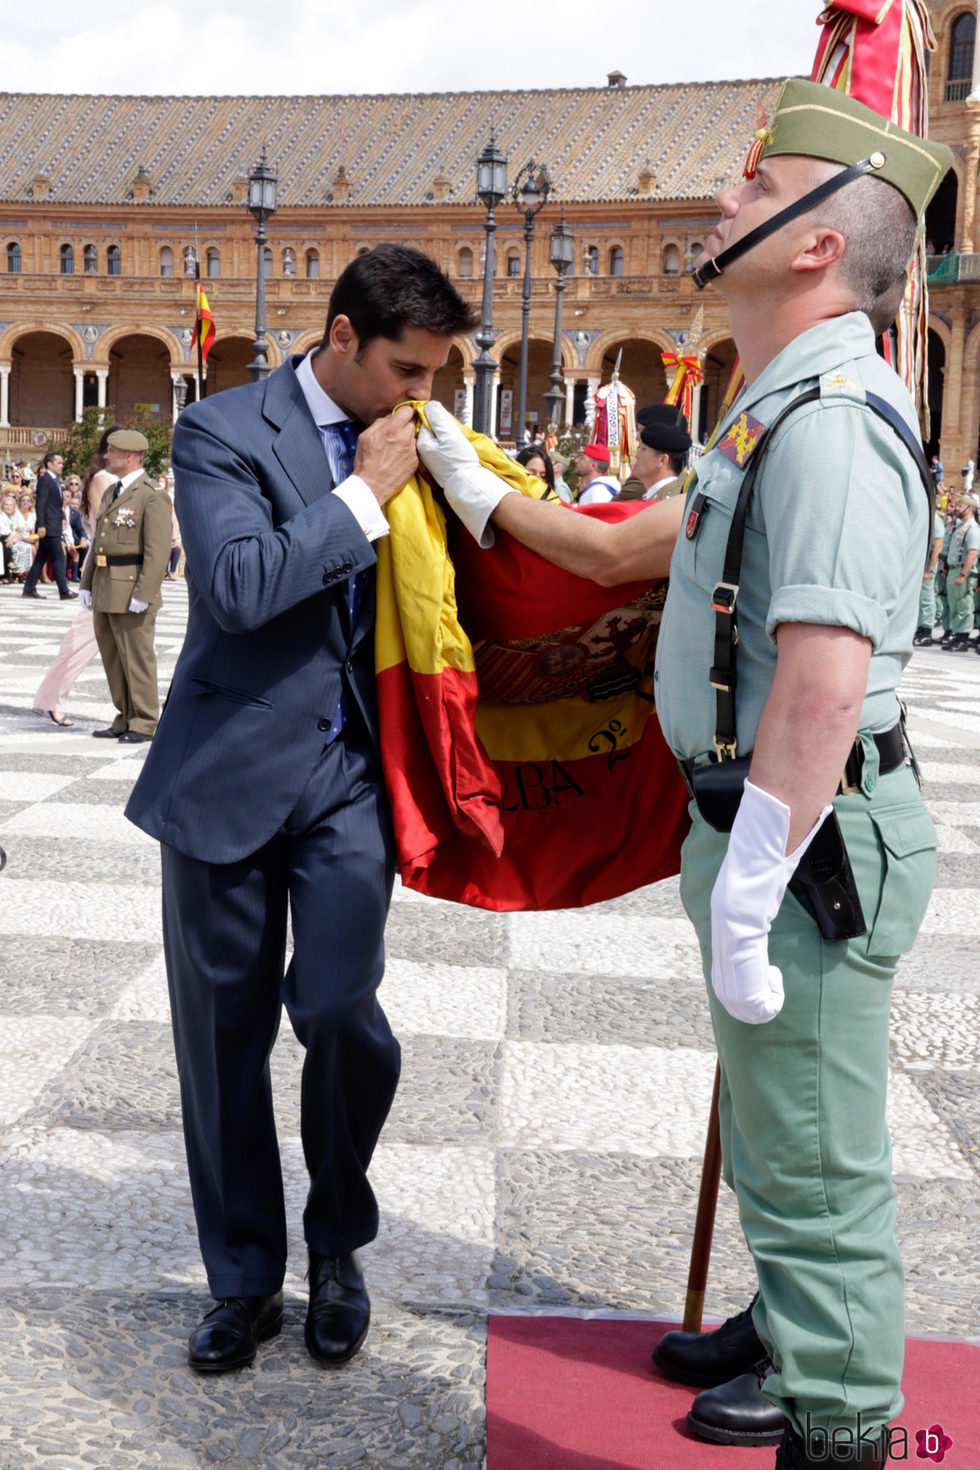 Fran Rivera jurando bandera en Sevilla